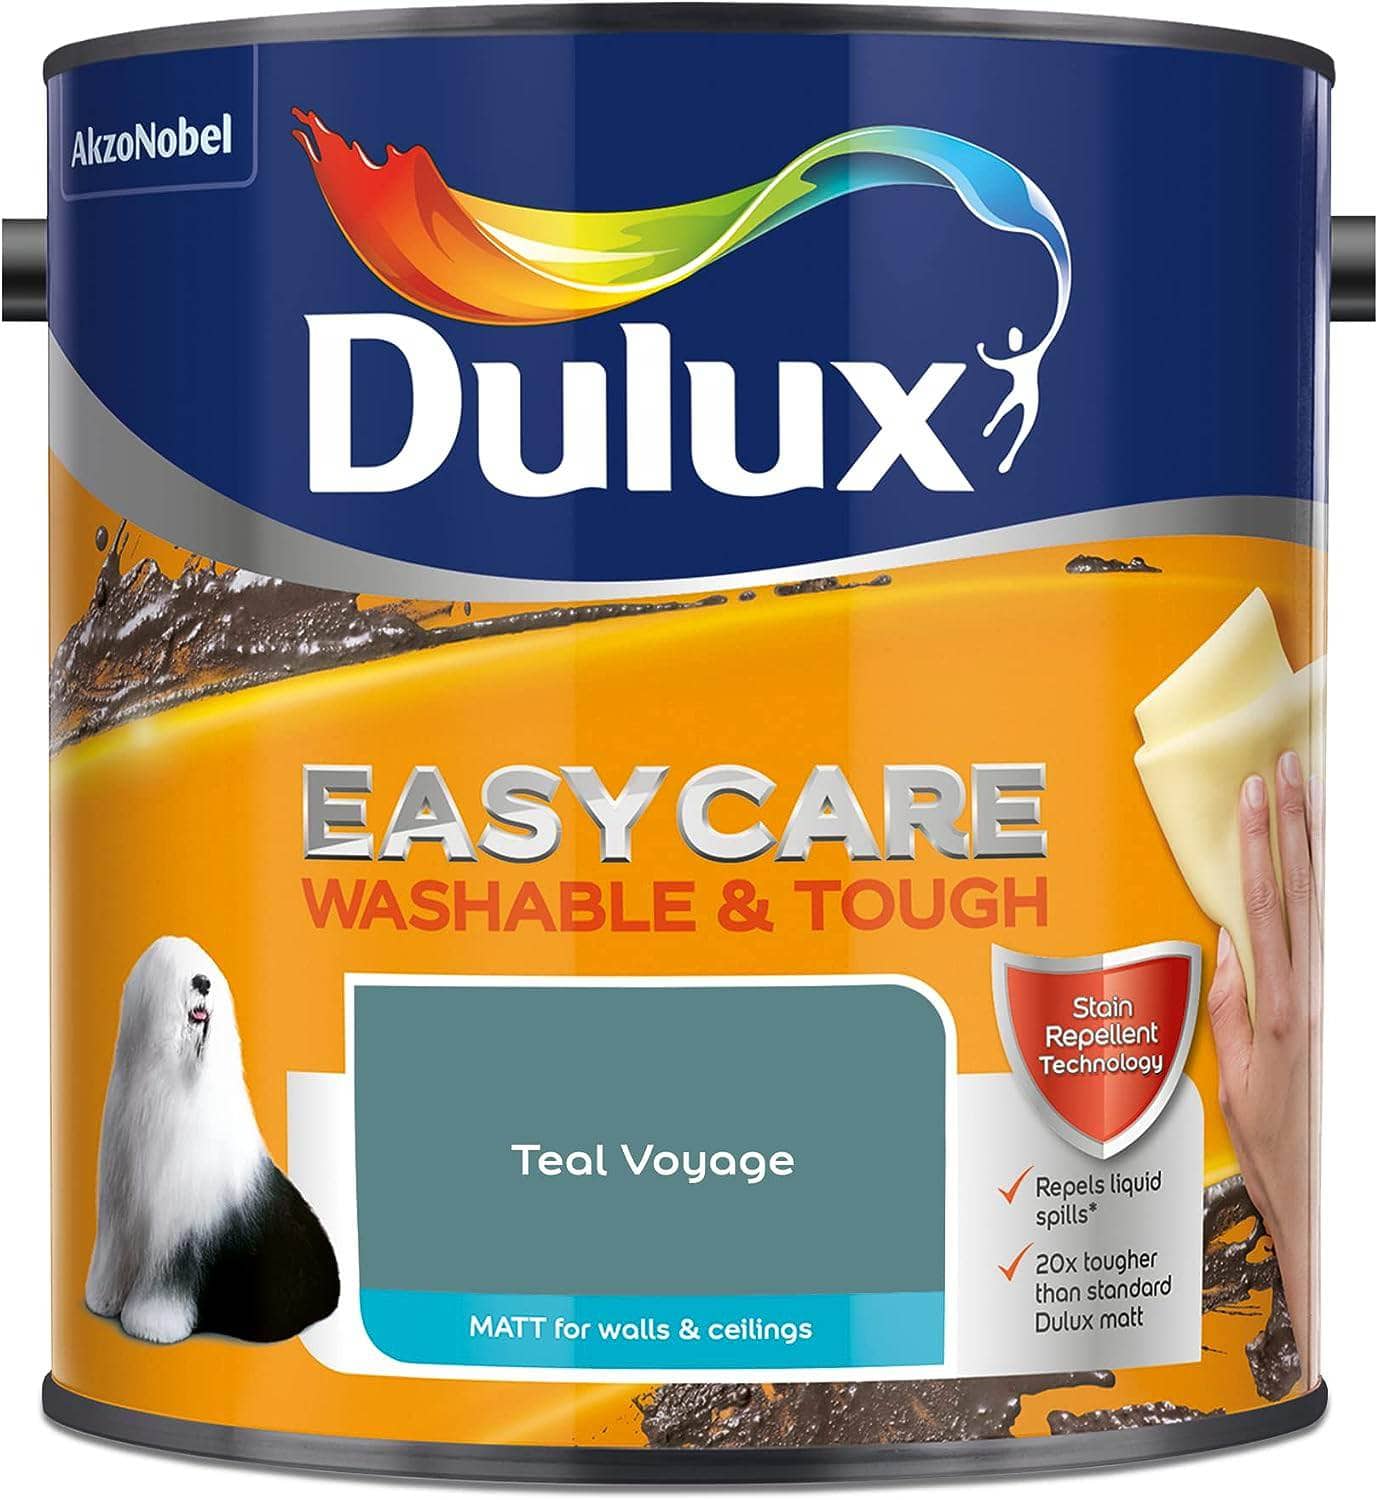 Paint  -  Dulux Easycare Matt Emulsion 2.5L - Teal Voyage  -  60005869